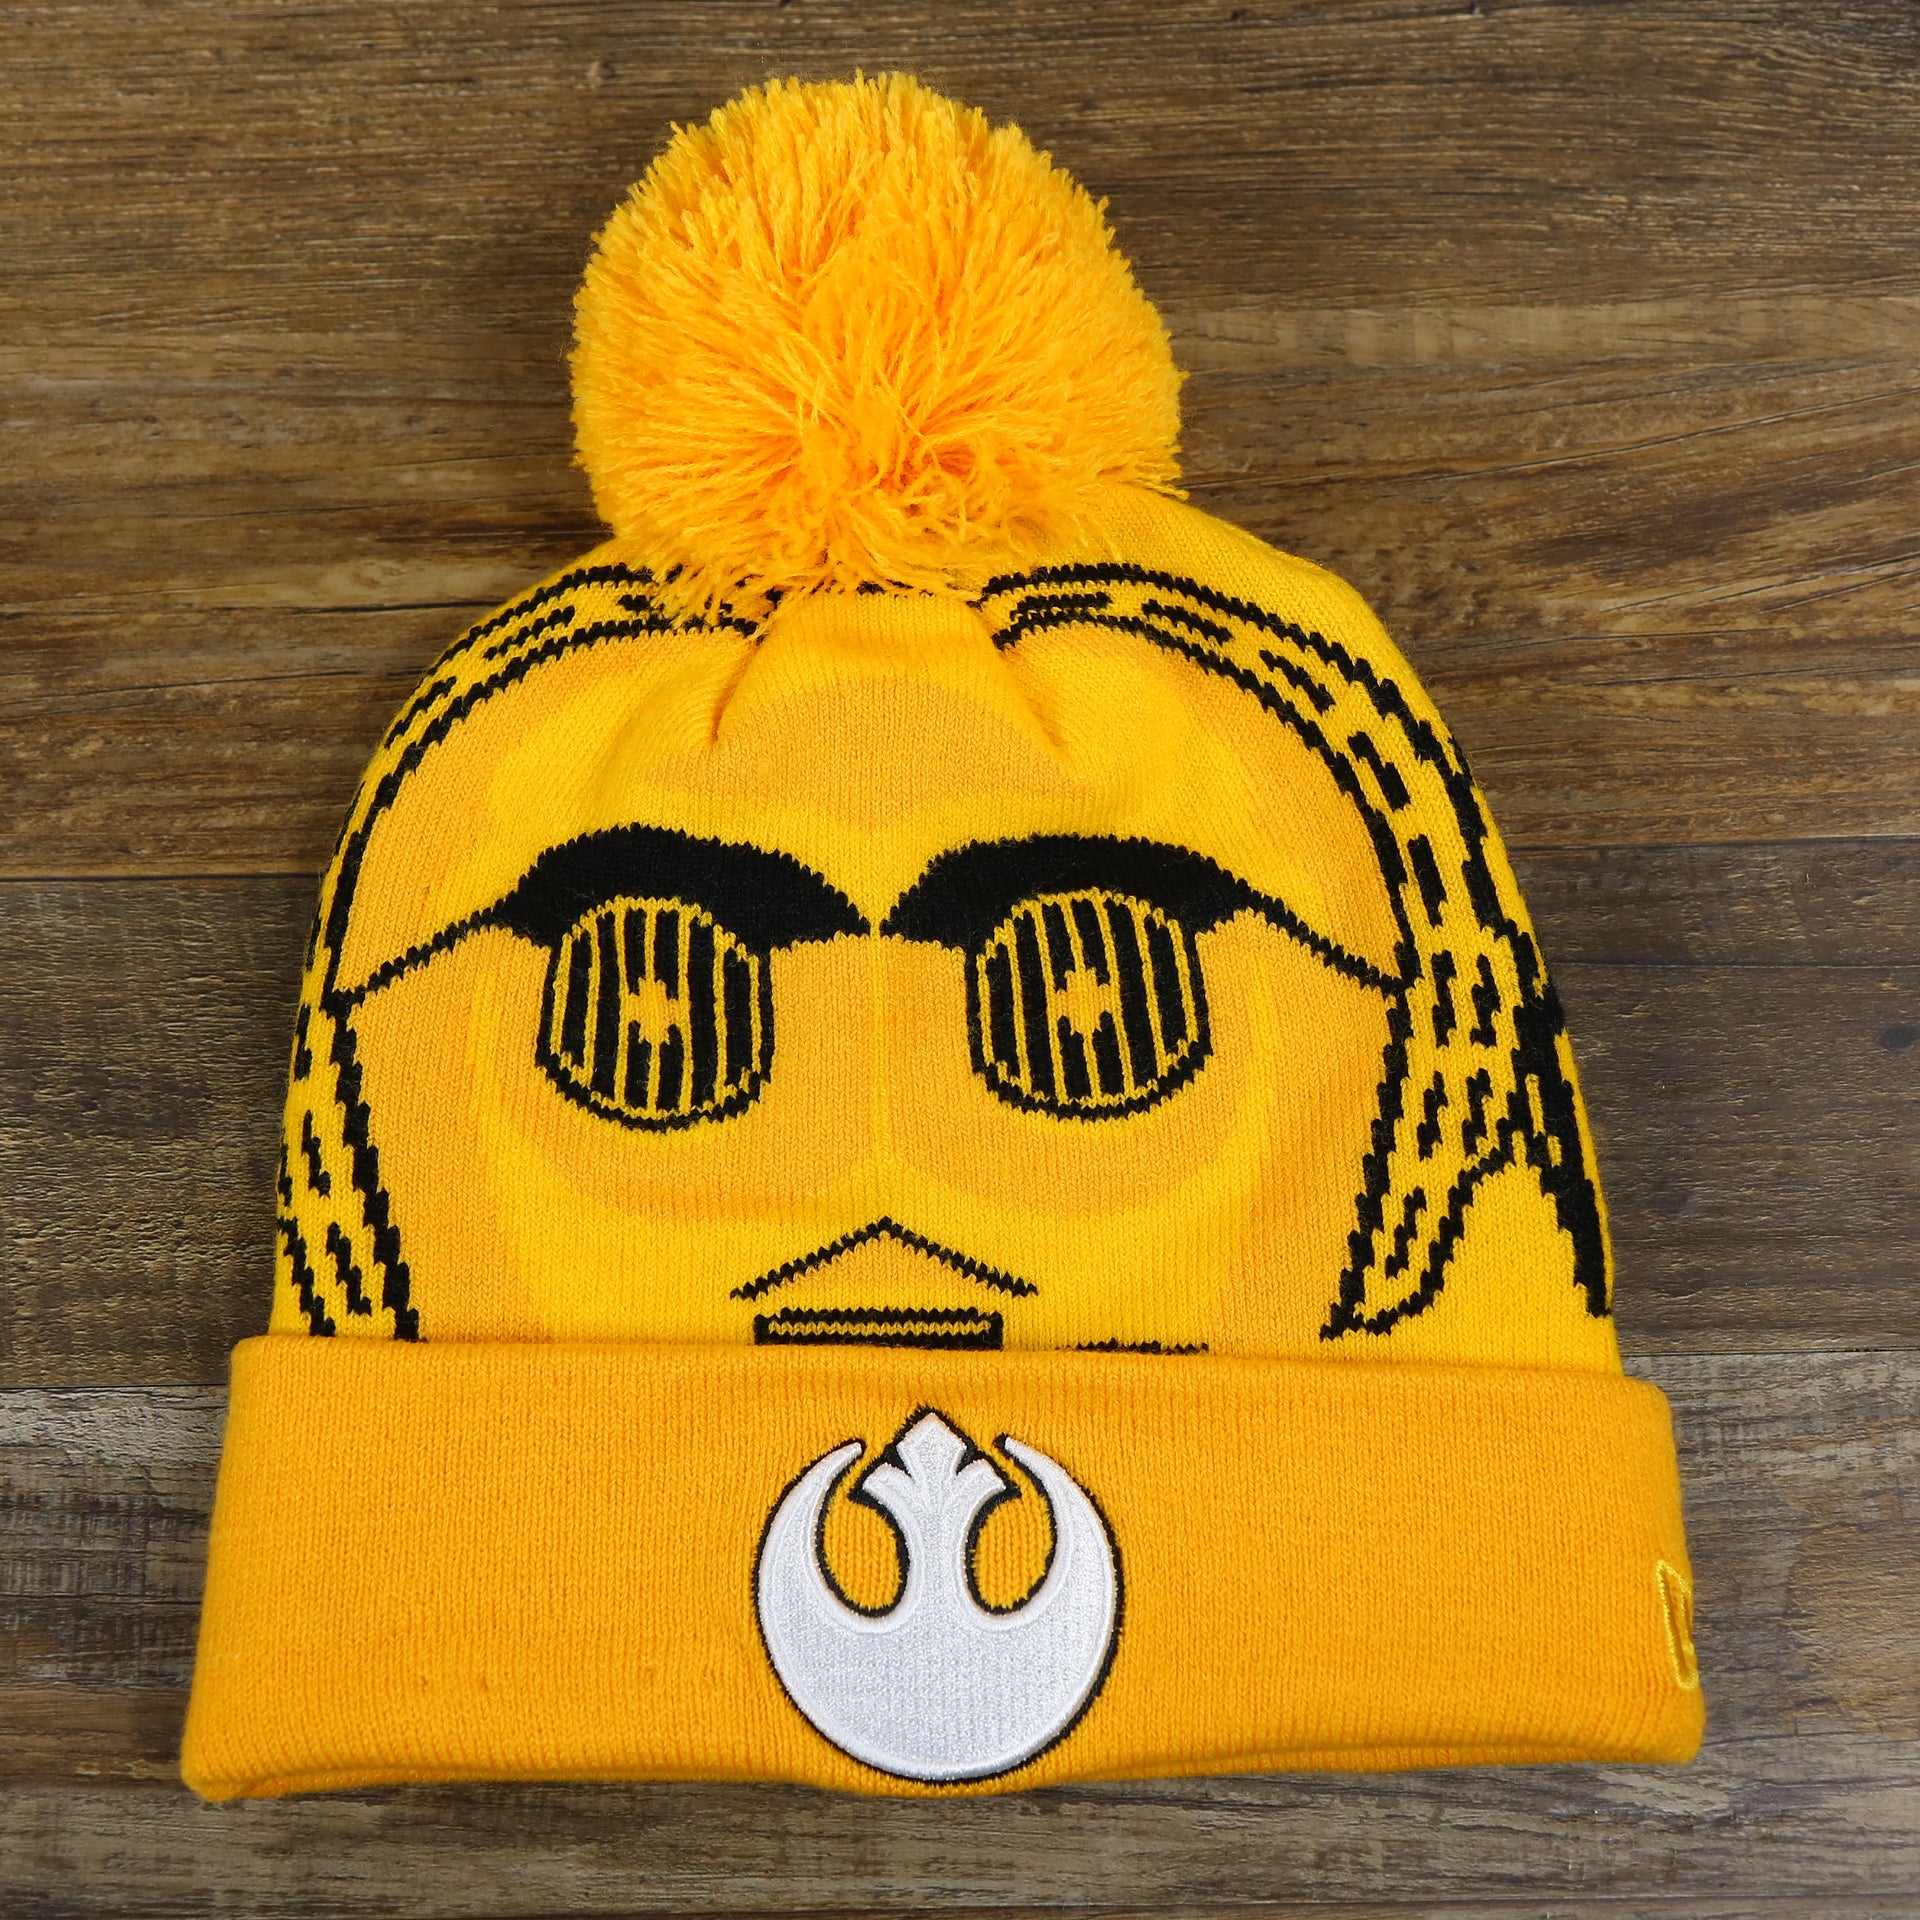 The C3PO Rebel Alliance Cuffed Logo Winter Beanie With Pom Pom | Yellow Winter Beanie